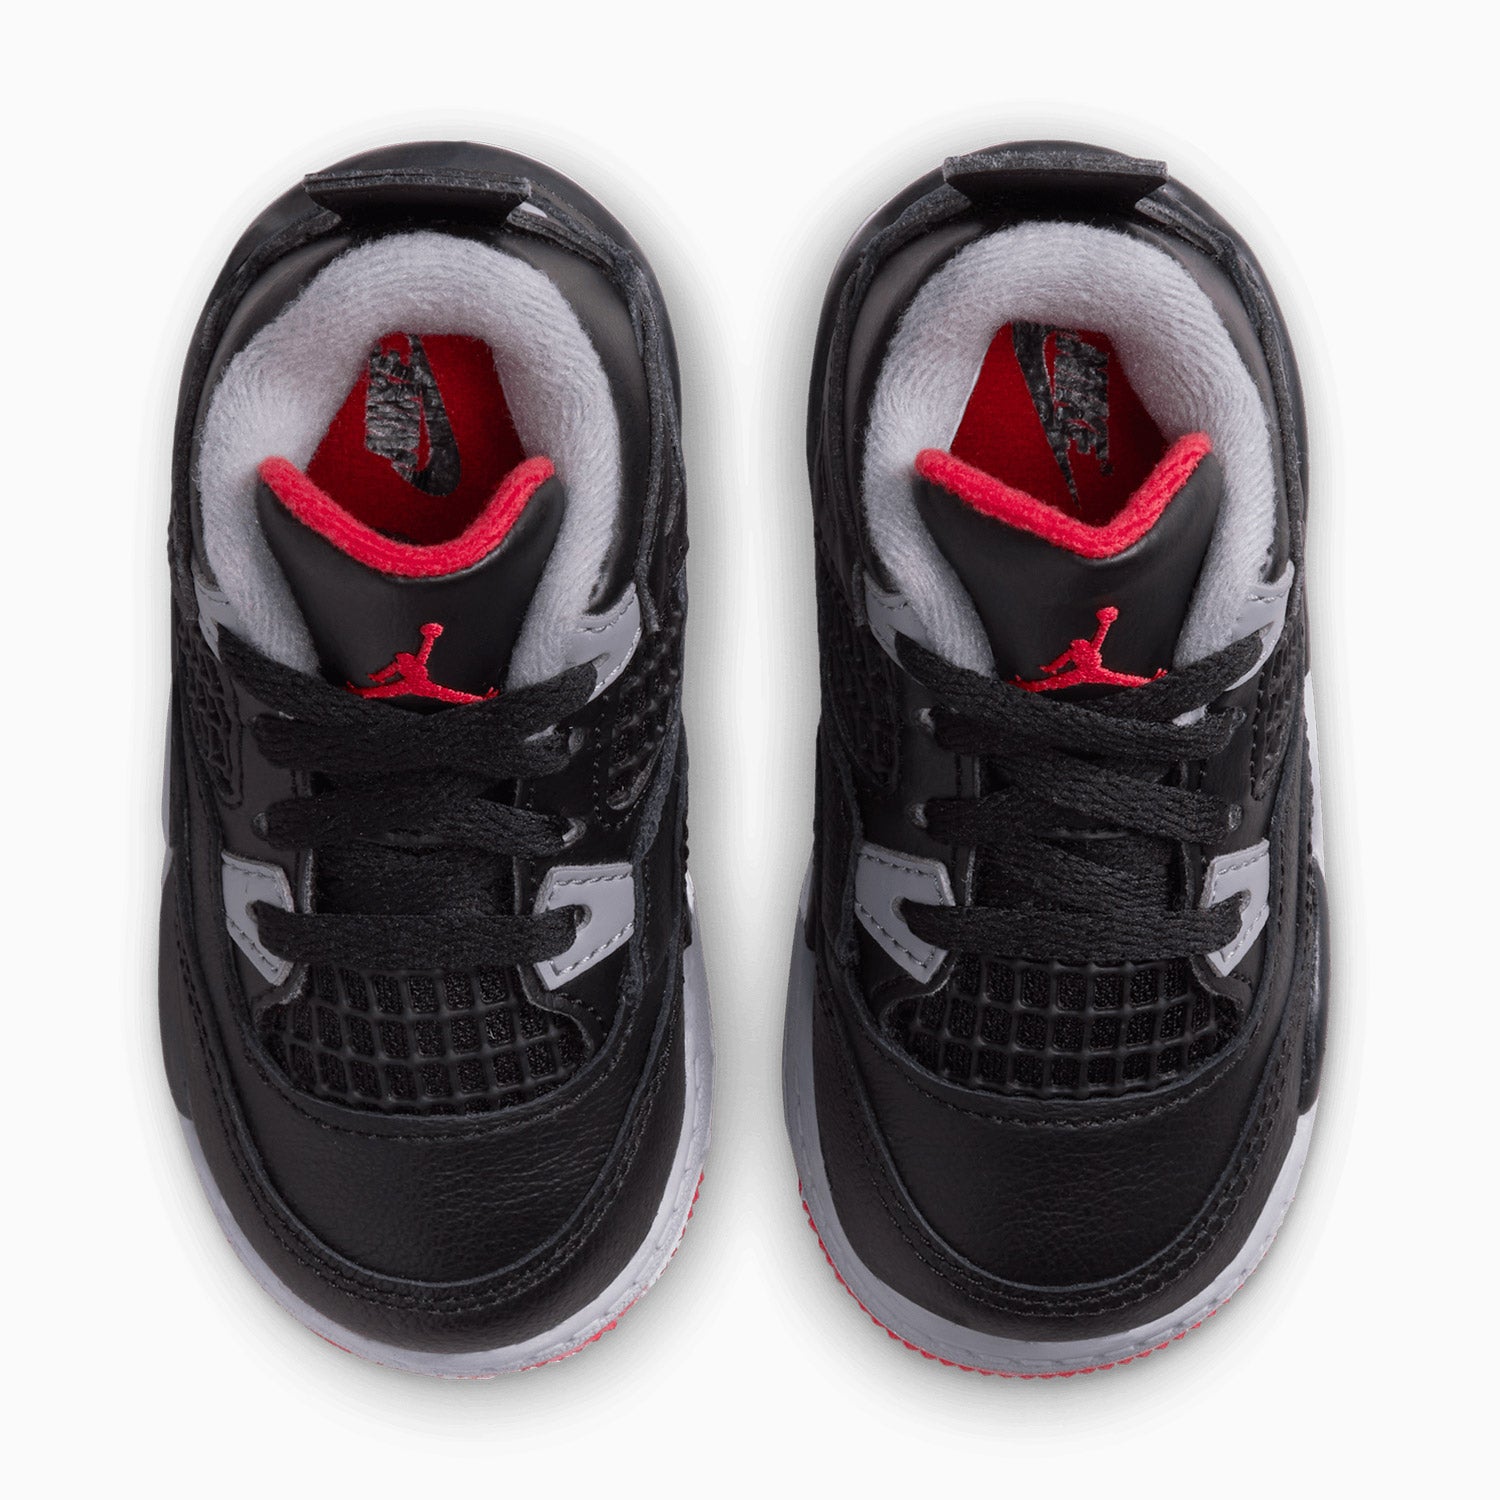 jordan-kids-air-jordan-4-retro-bred-reimagined-toddlers-shoes-bq7670-006